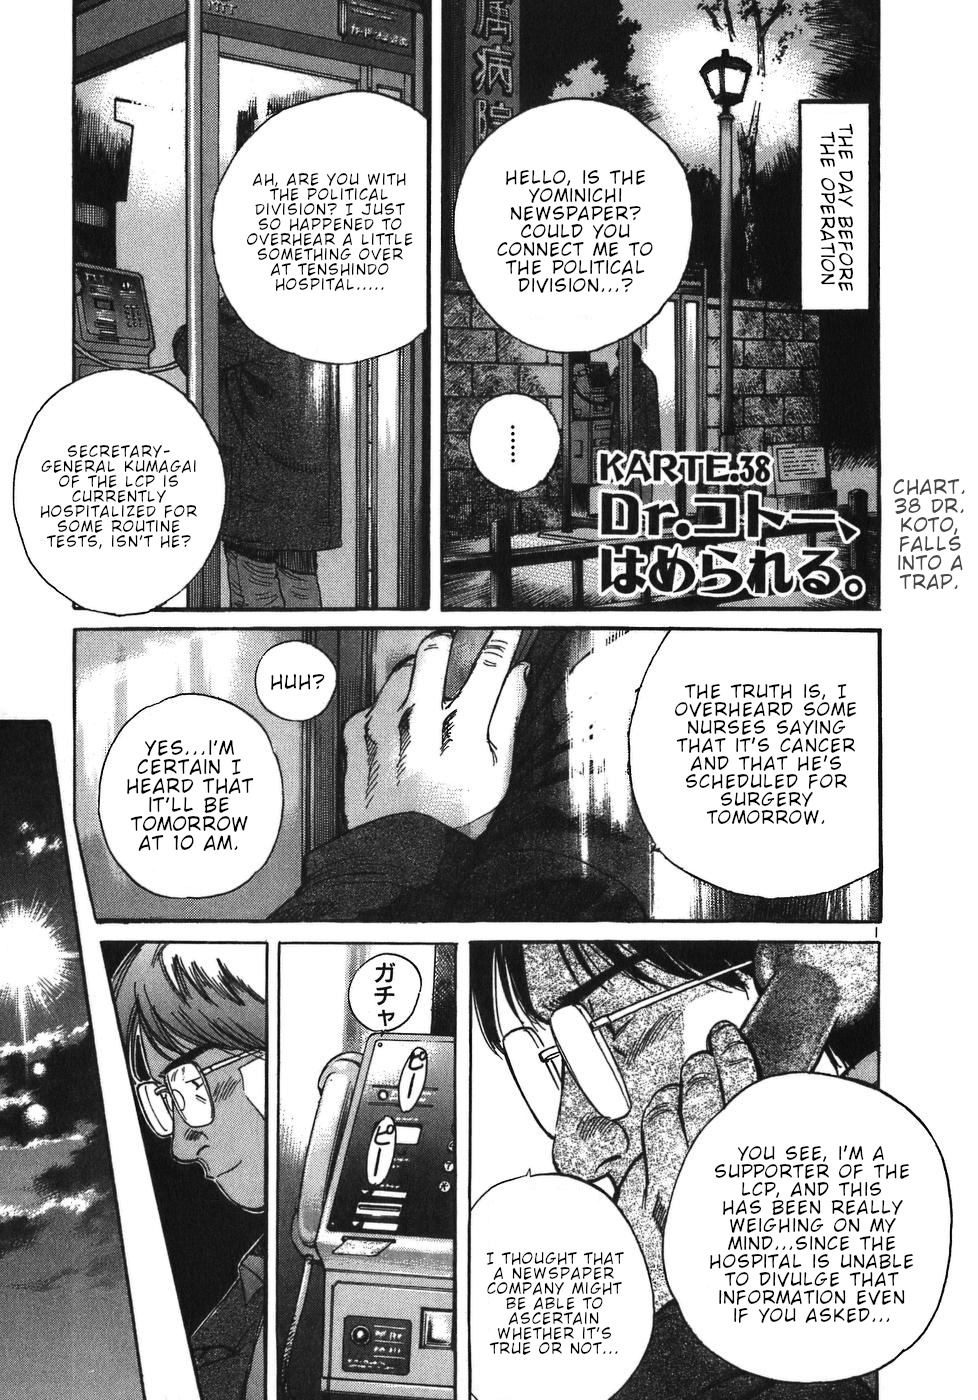 Dr. Koto Shinryoujo Vol.4 Chapter 38: Dr. Koto Falls into a Trap